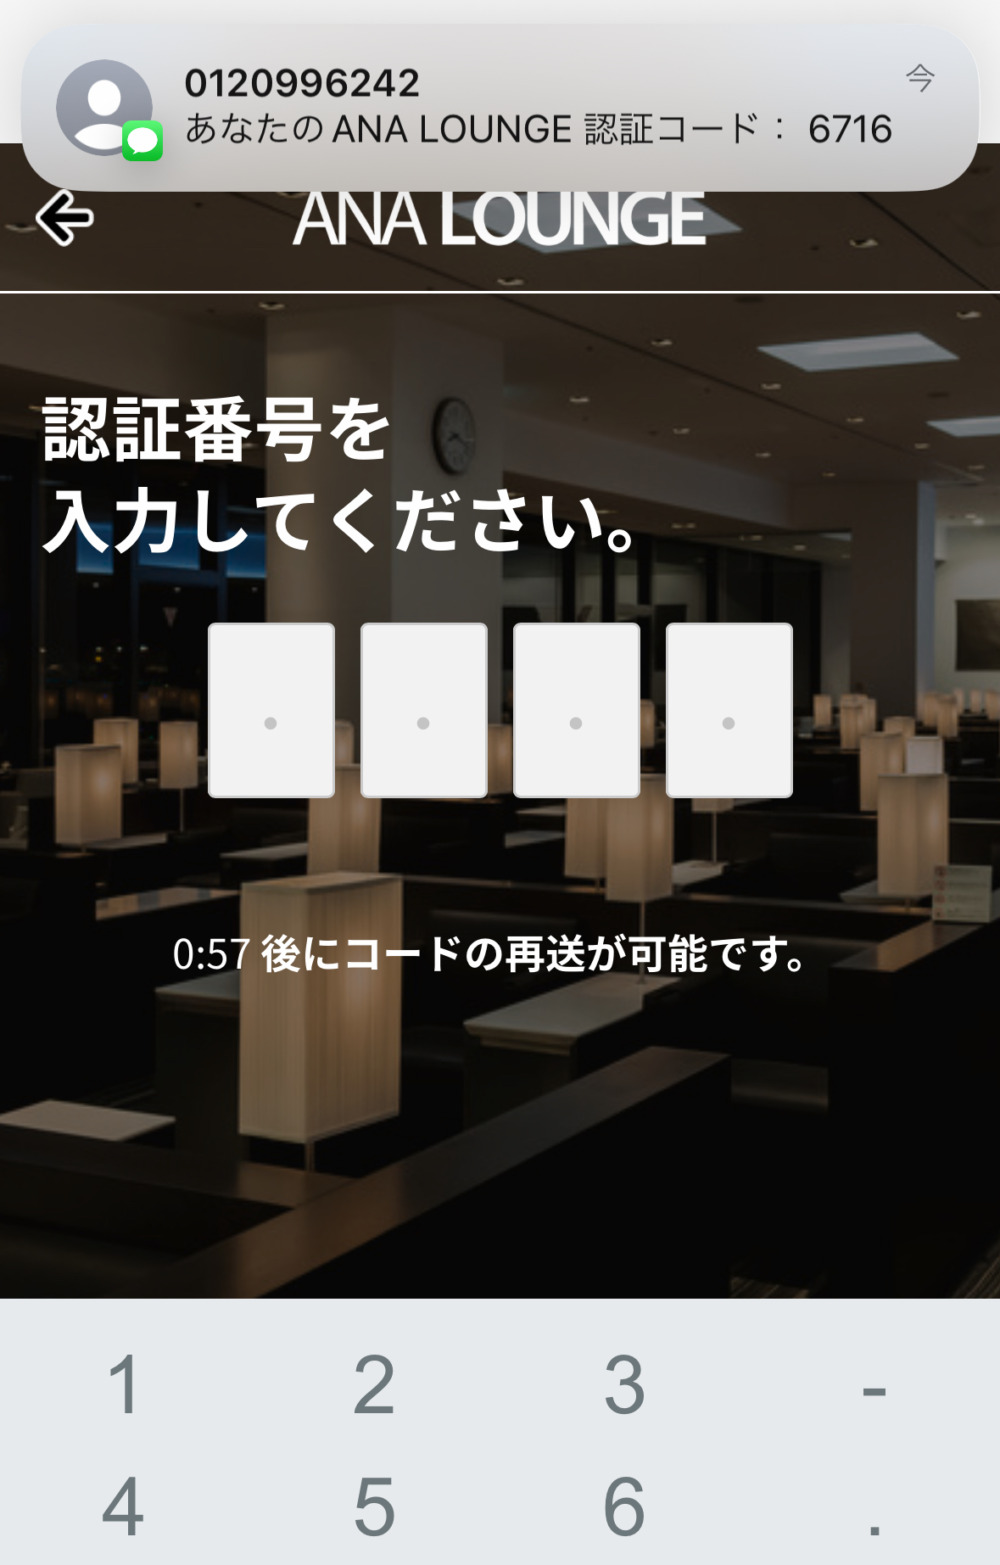 成田国際空港ターミナル1サテライト2ANAラウンジ・ヌードルバー注文方法・電話認証